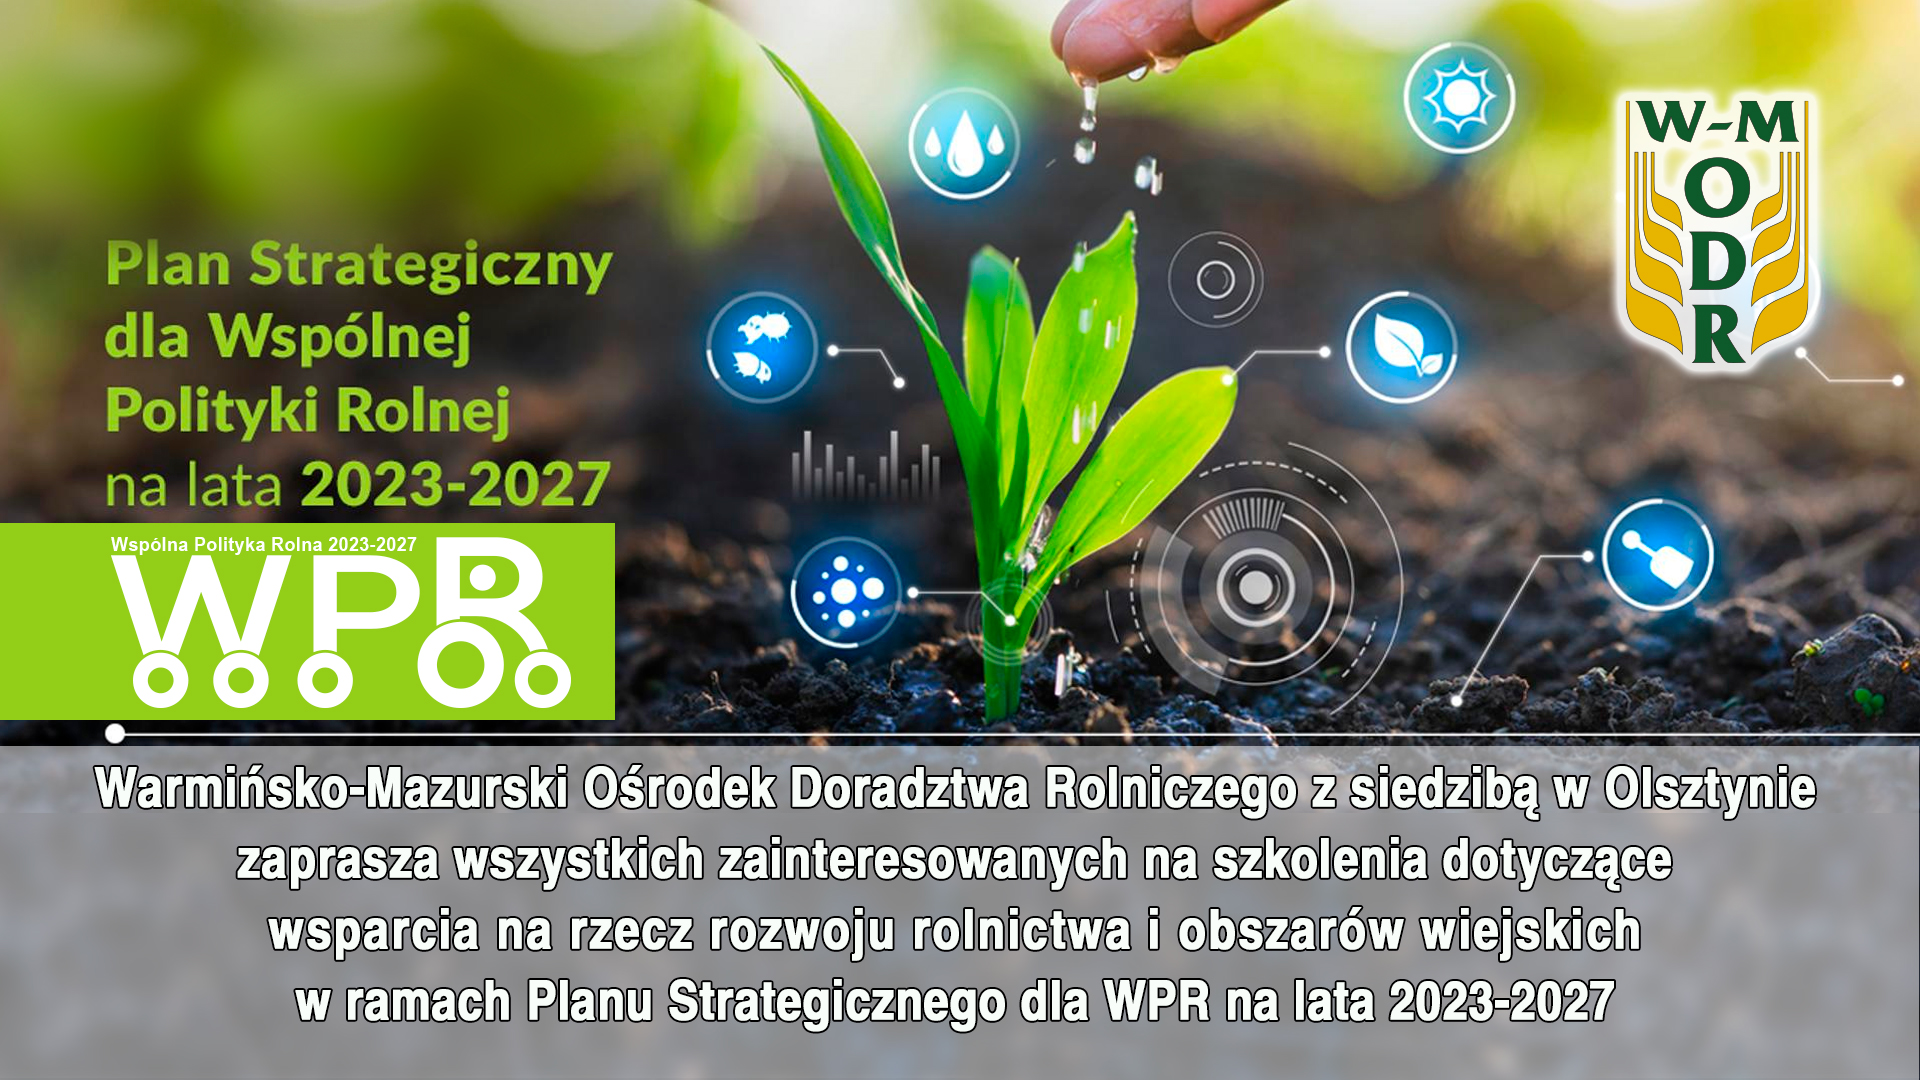 WMODR zaprasza na szkolenia dotyczące wsparcia na rzecz rozwoju rolnictwa i obszarów wiejskich w ramach Planu Strategicznego dla WPR na lata 2023-2027